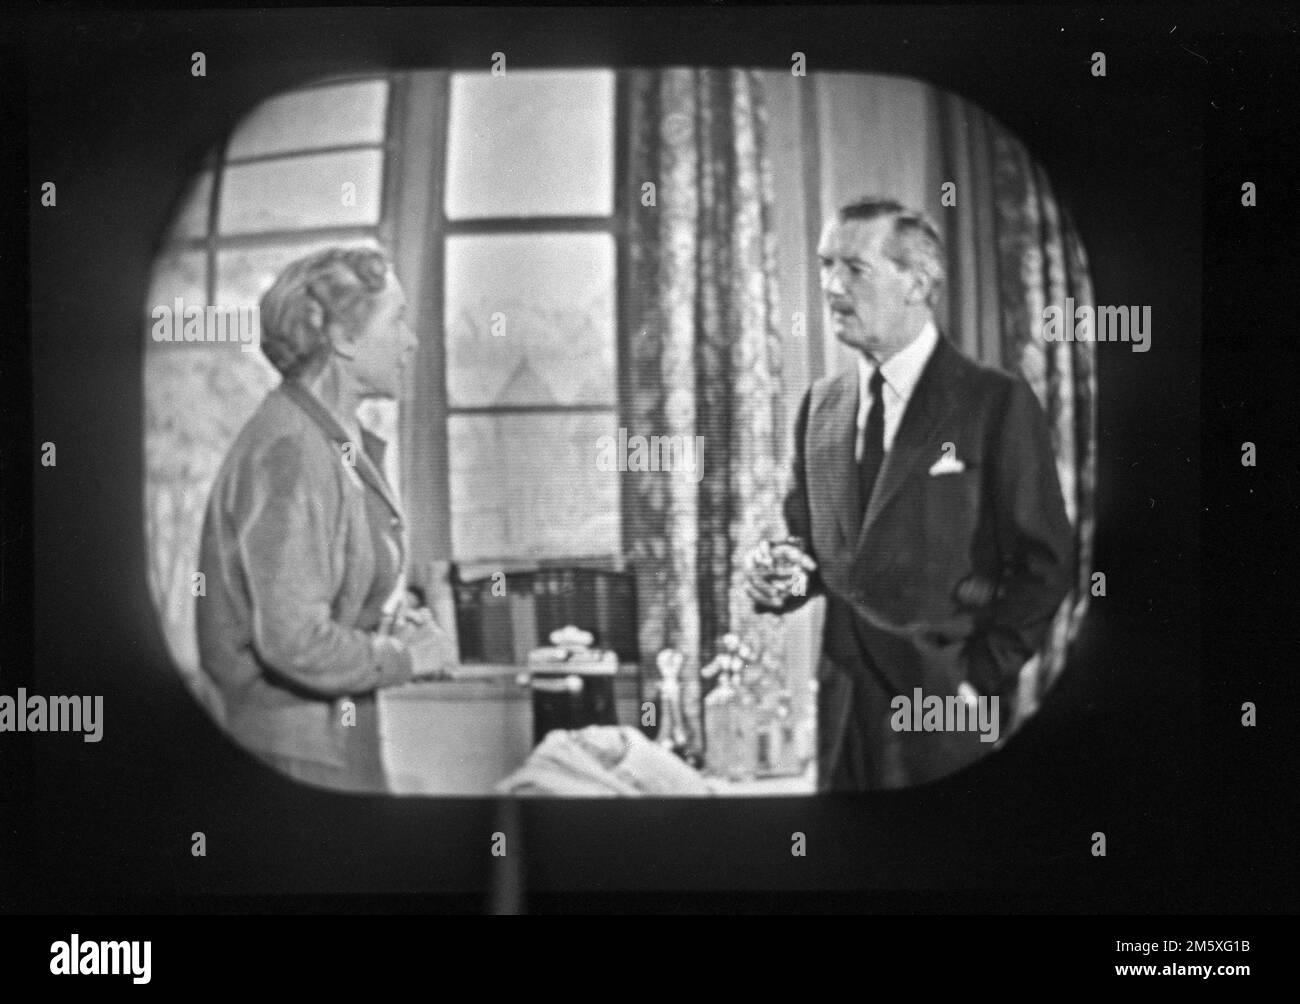 Années 1950, historique, sur un écran de télévision de l'époque, un homme et une femme agissant dans une pièce diffusée sur BBC Television, Angleterre, Royaume-Uni. Banque D'Images